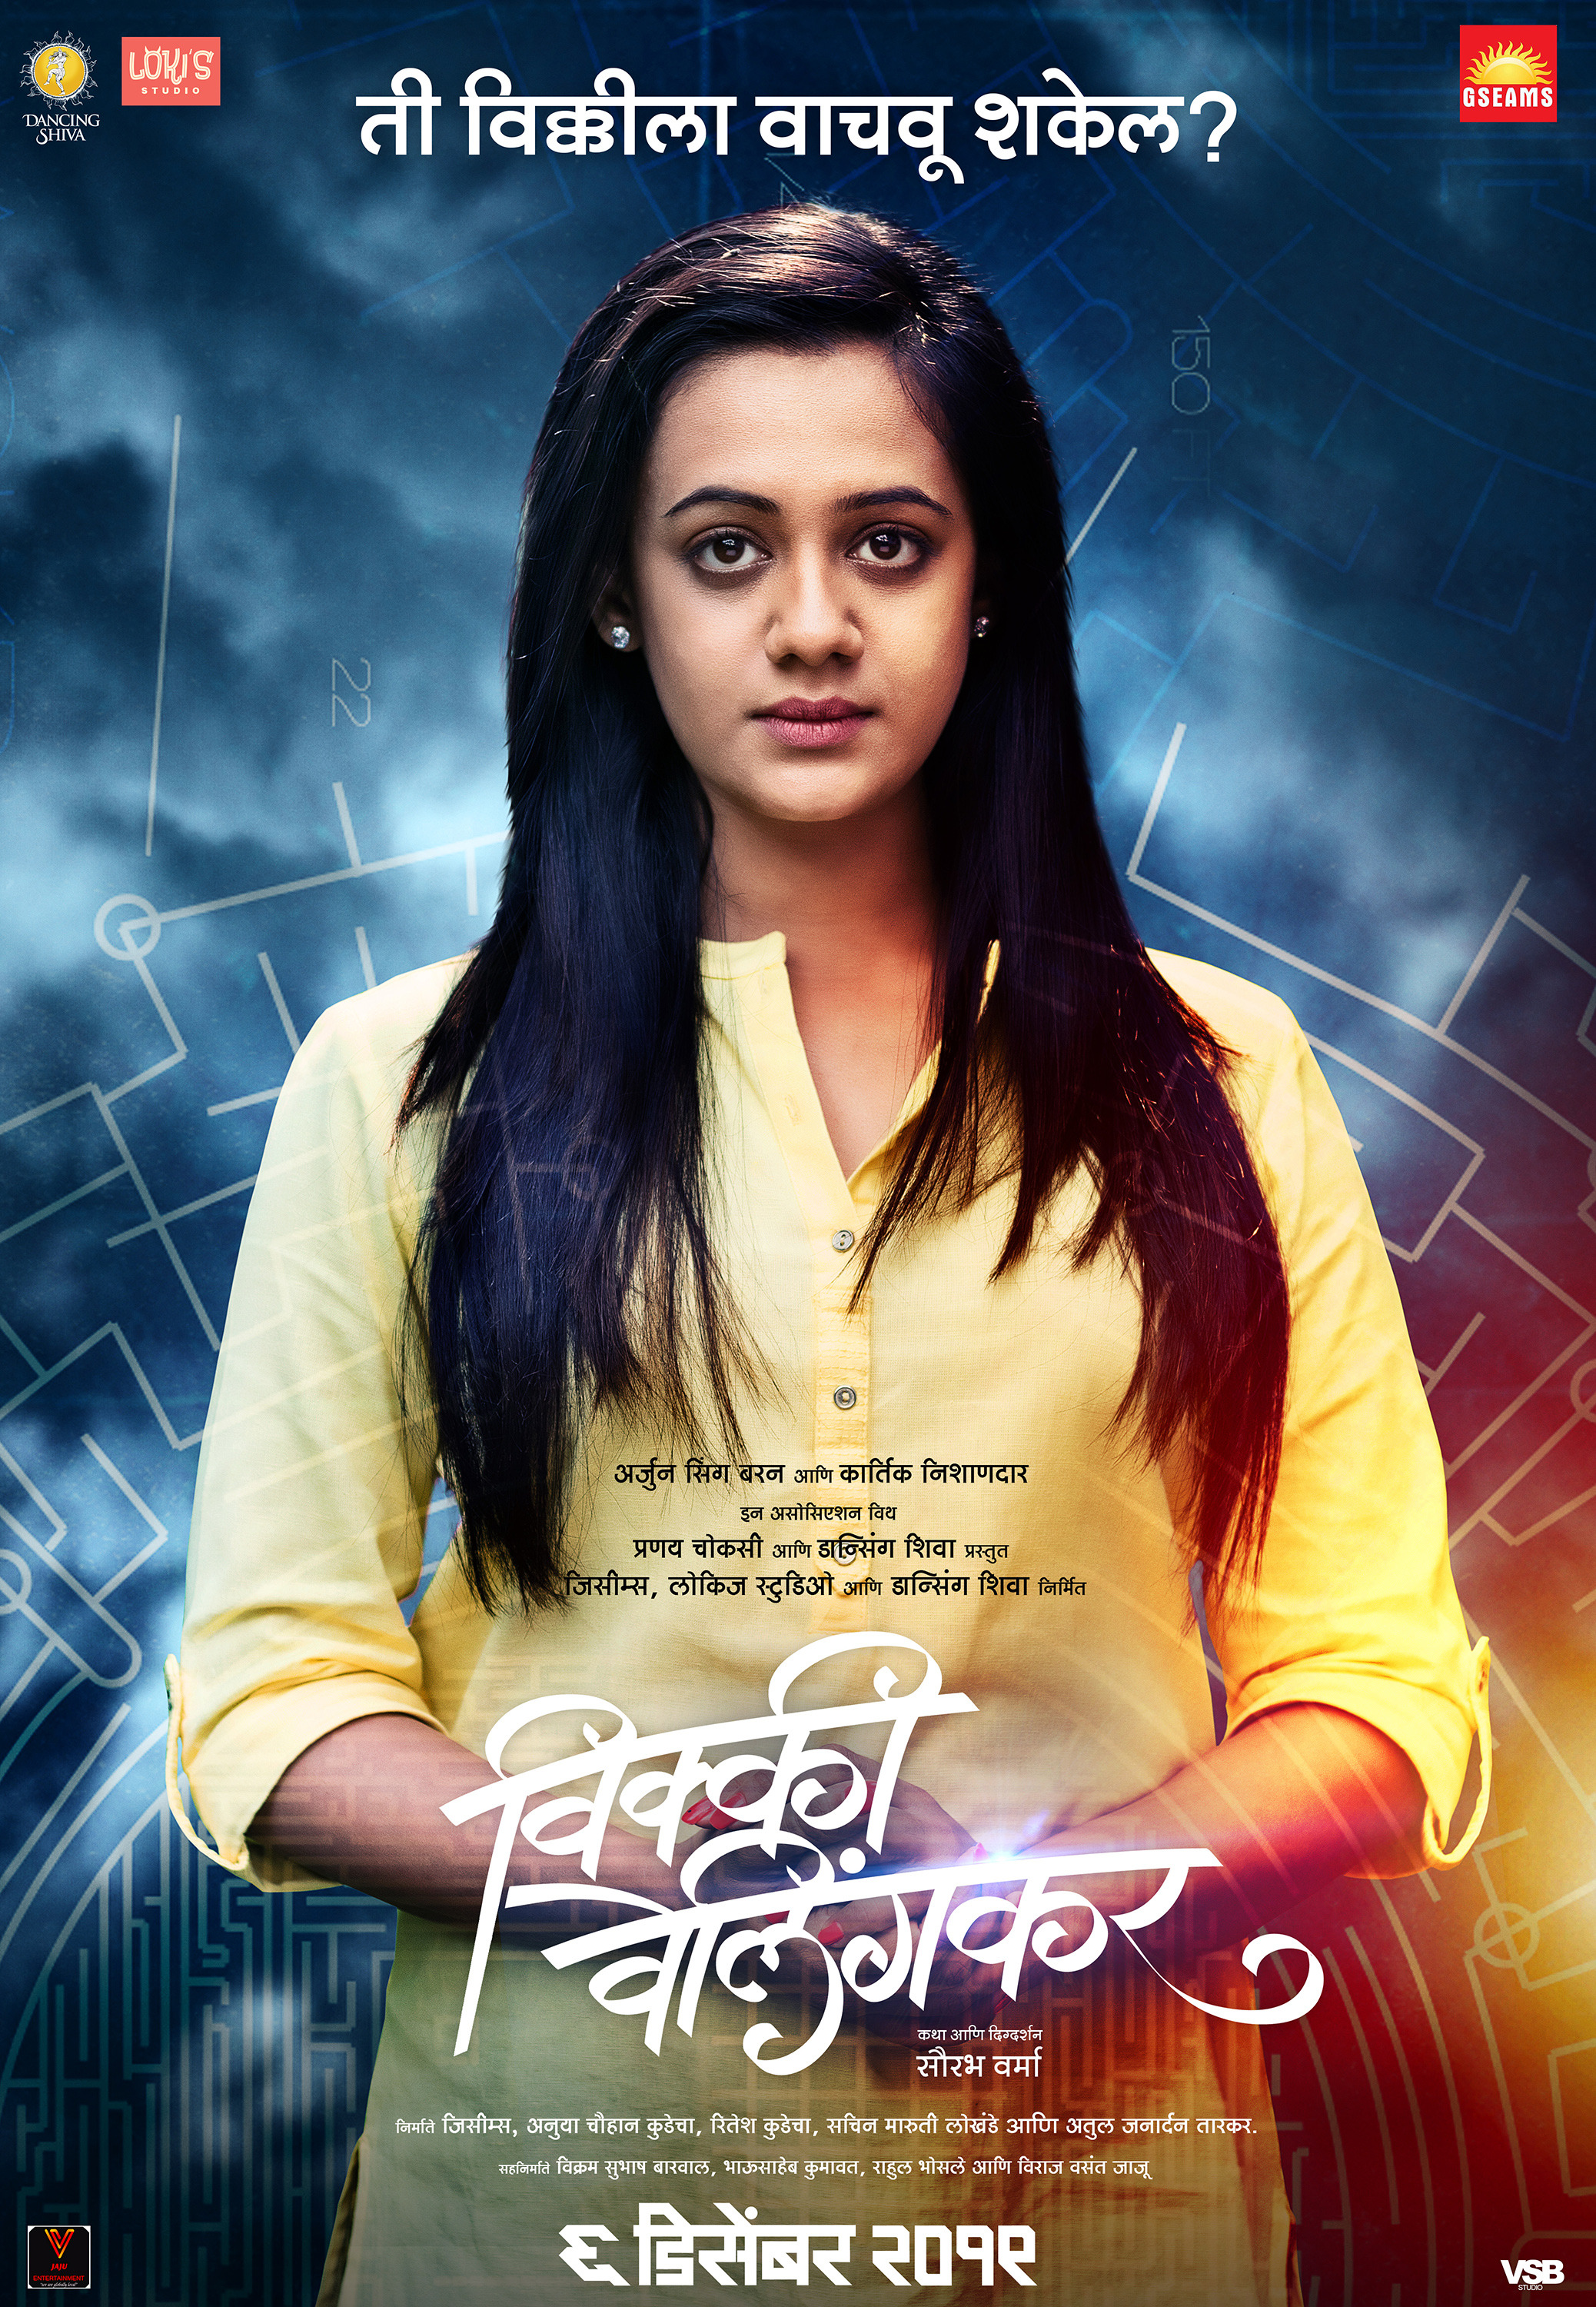 Mega Sized Movie Poster Image for Vicky Velingkar (#9 of 9)